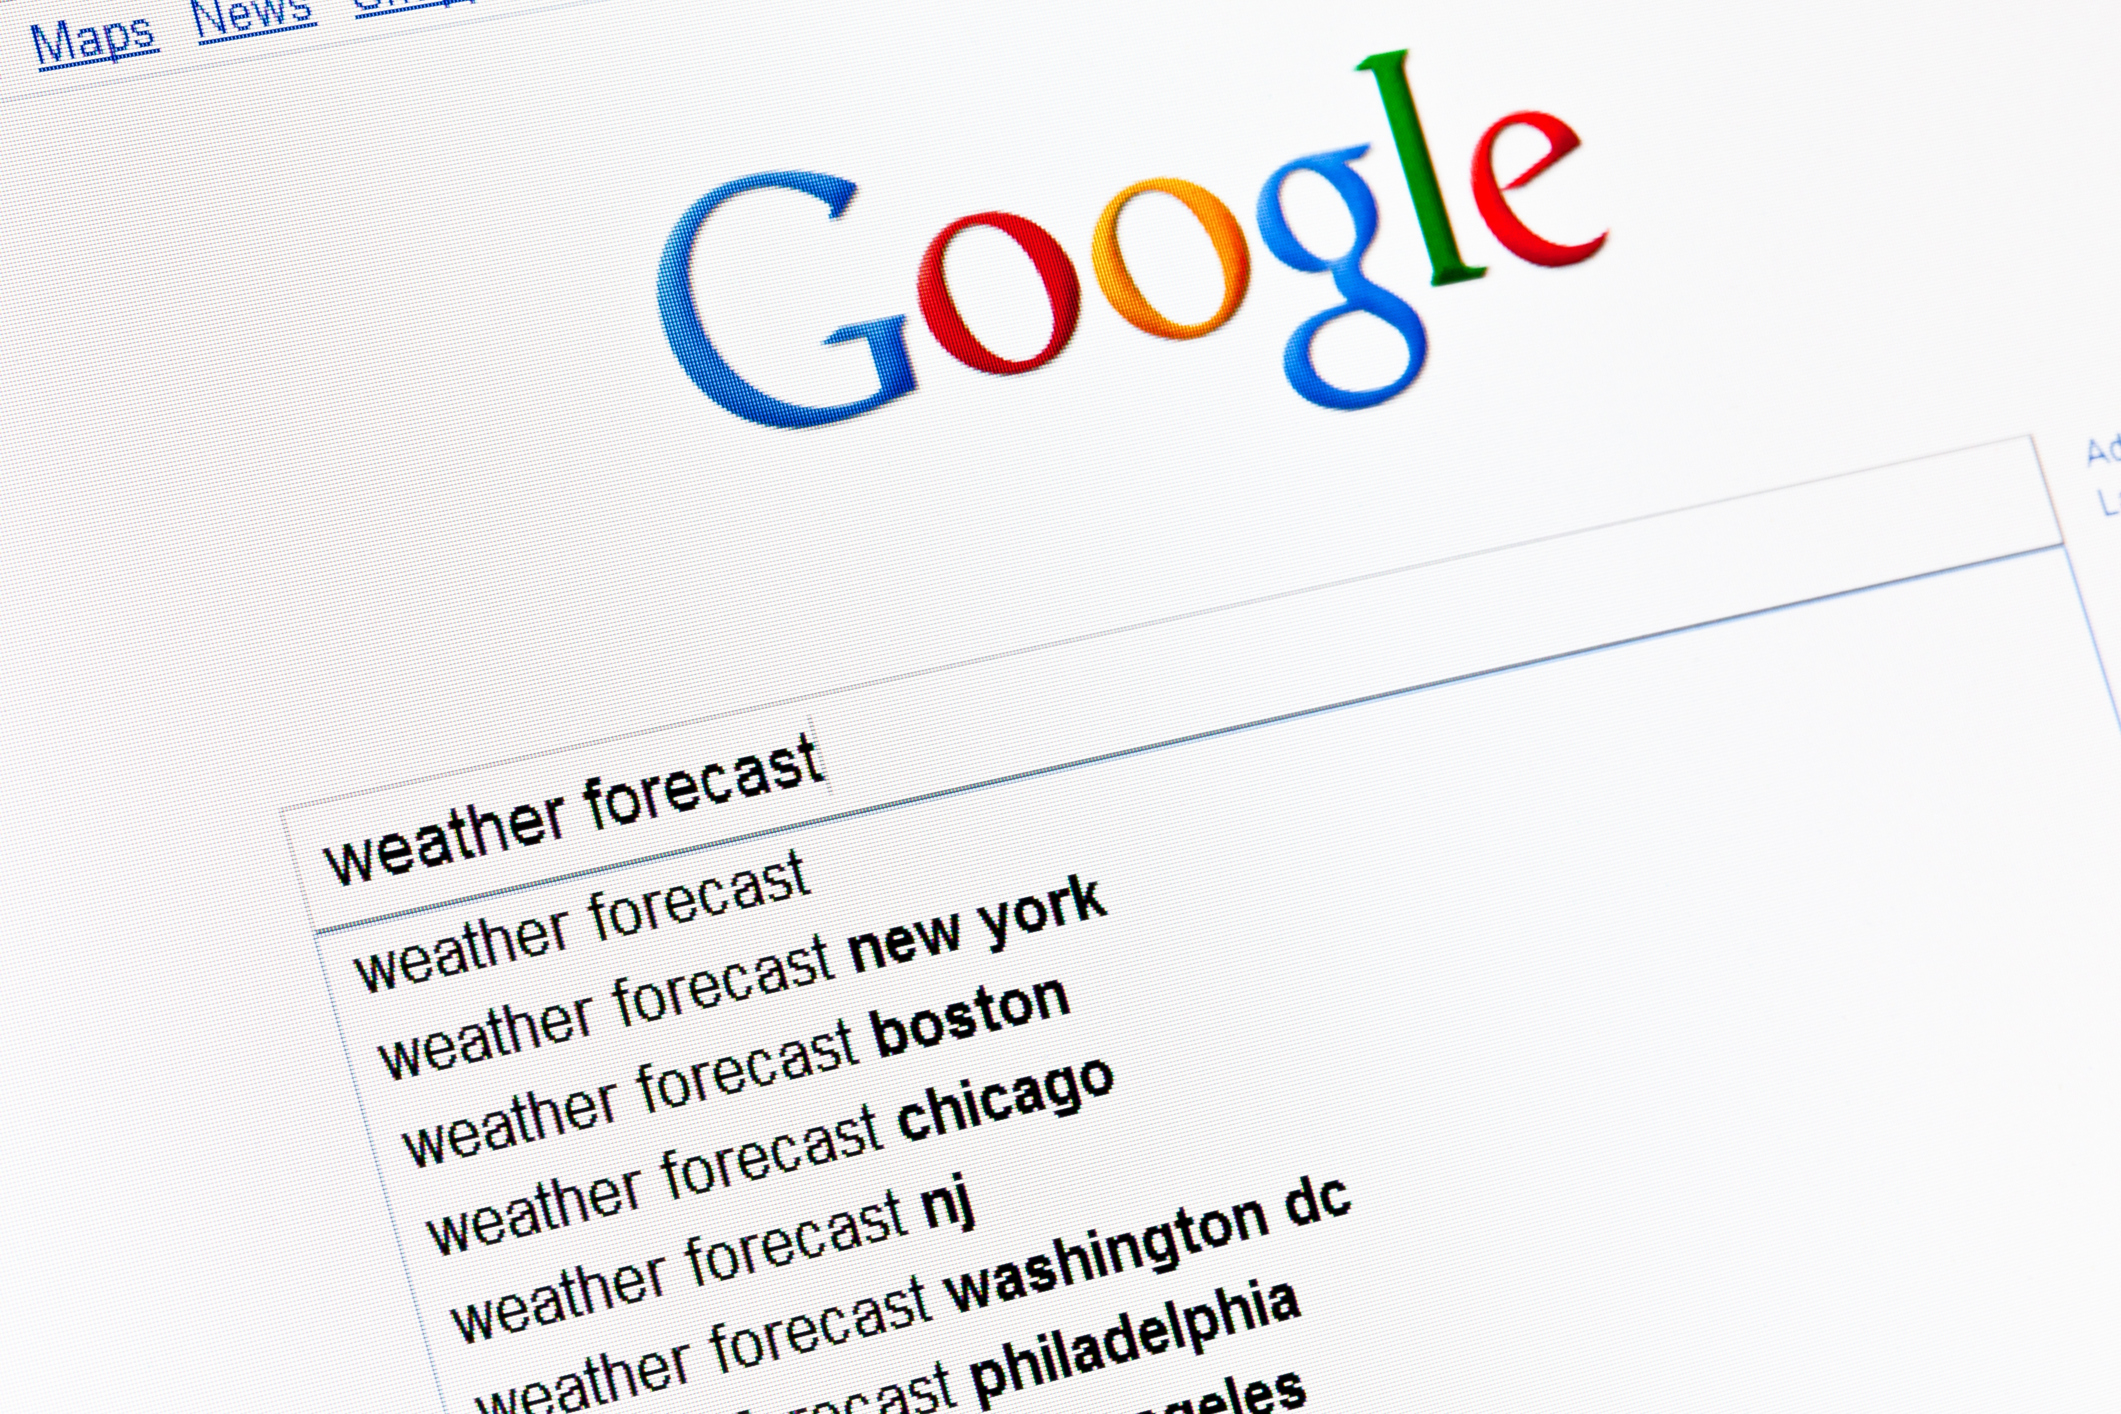 La ricerca di previsioni meteorologiche su Google in lingua inglese